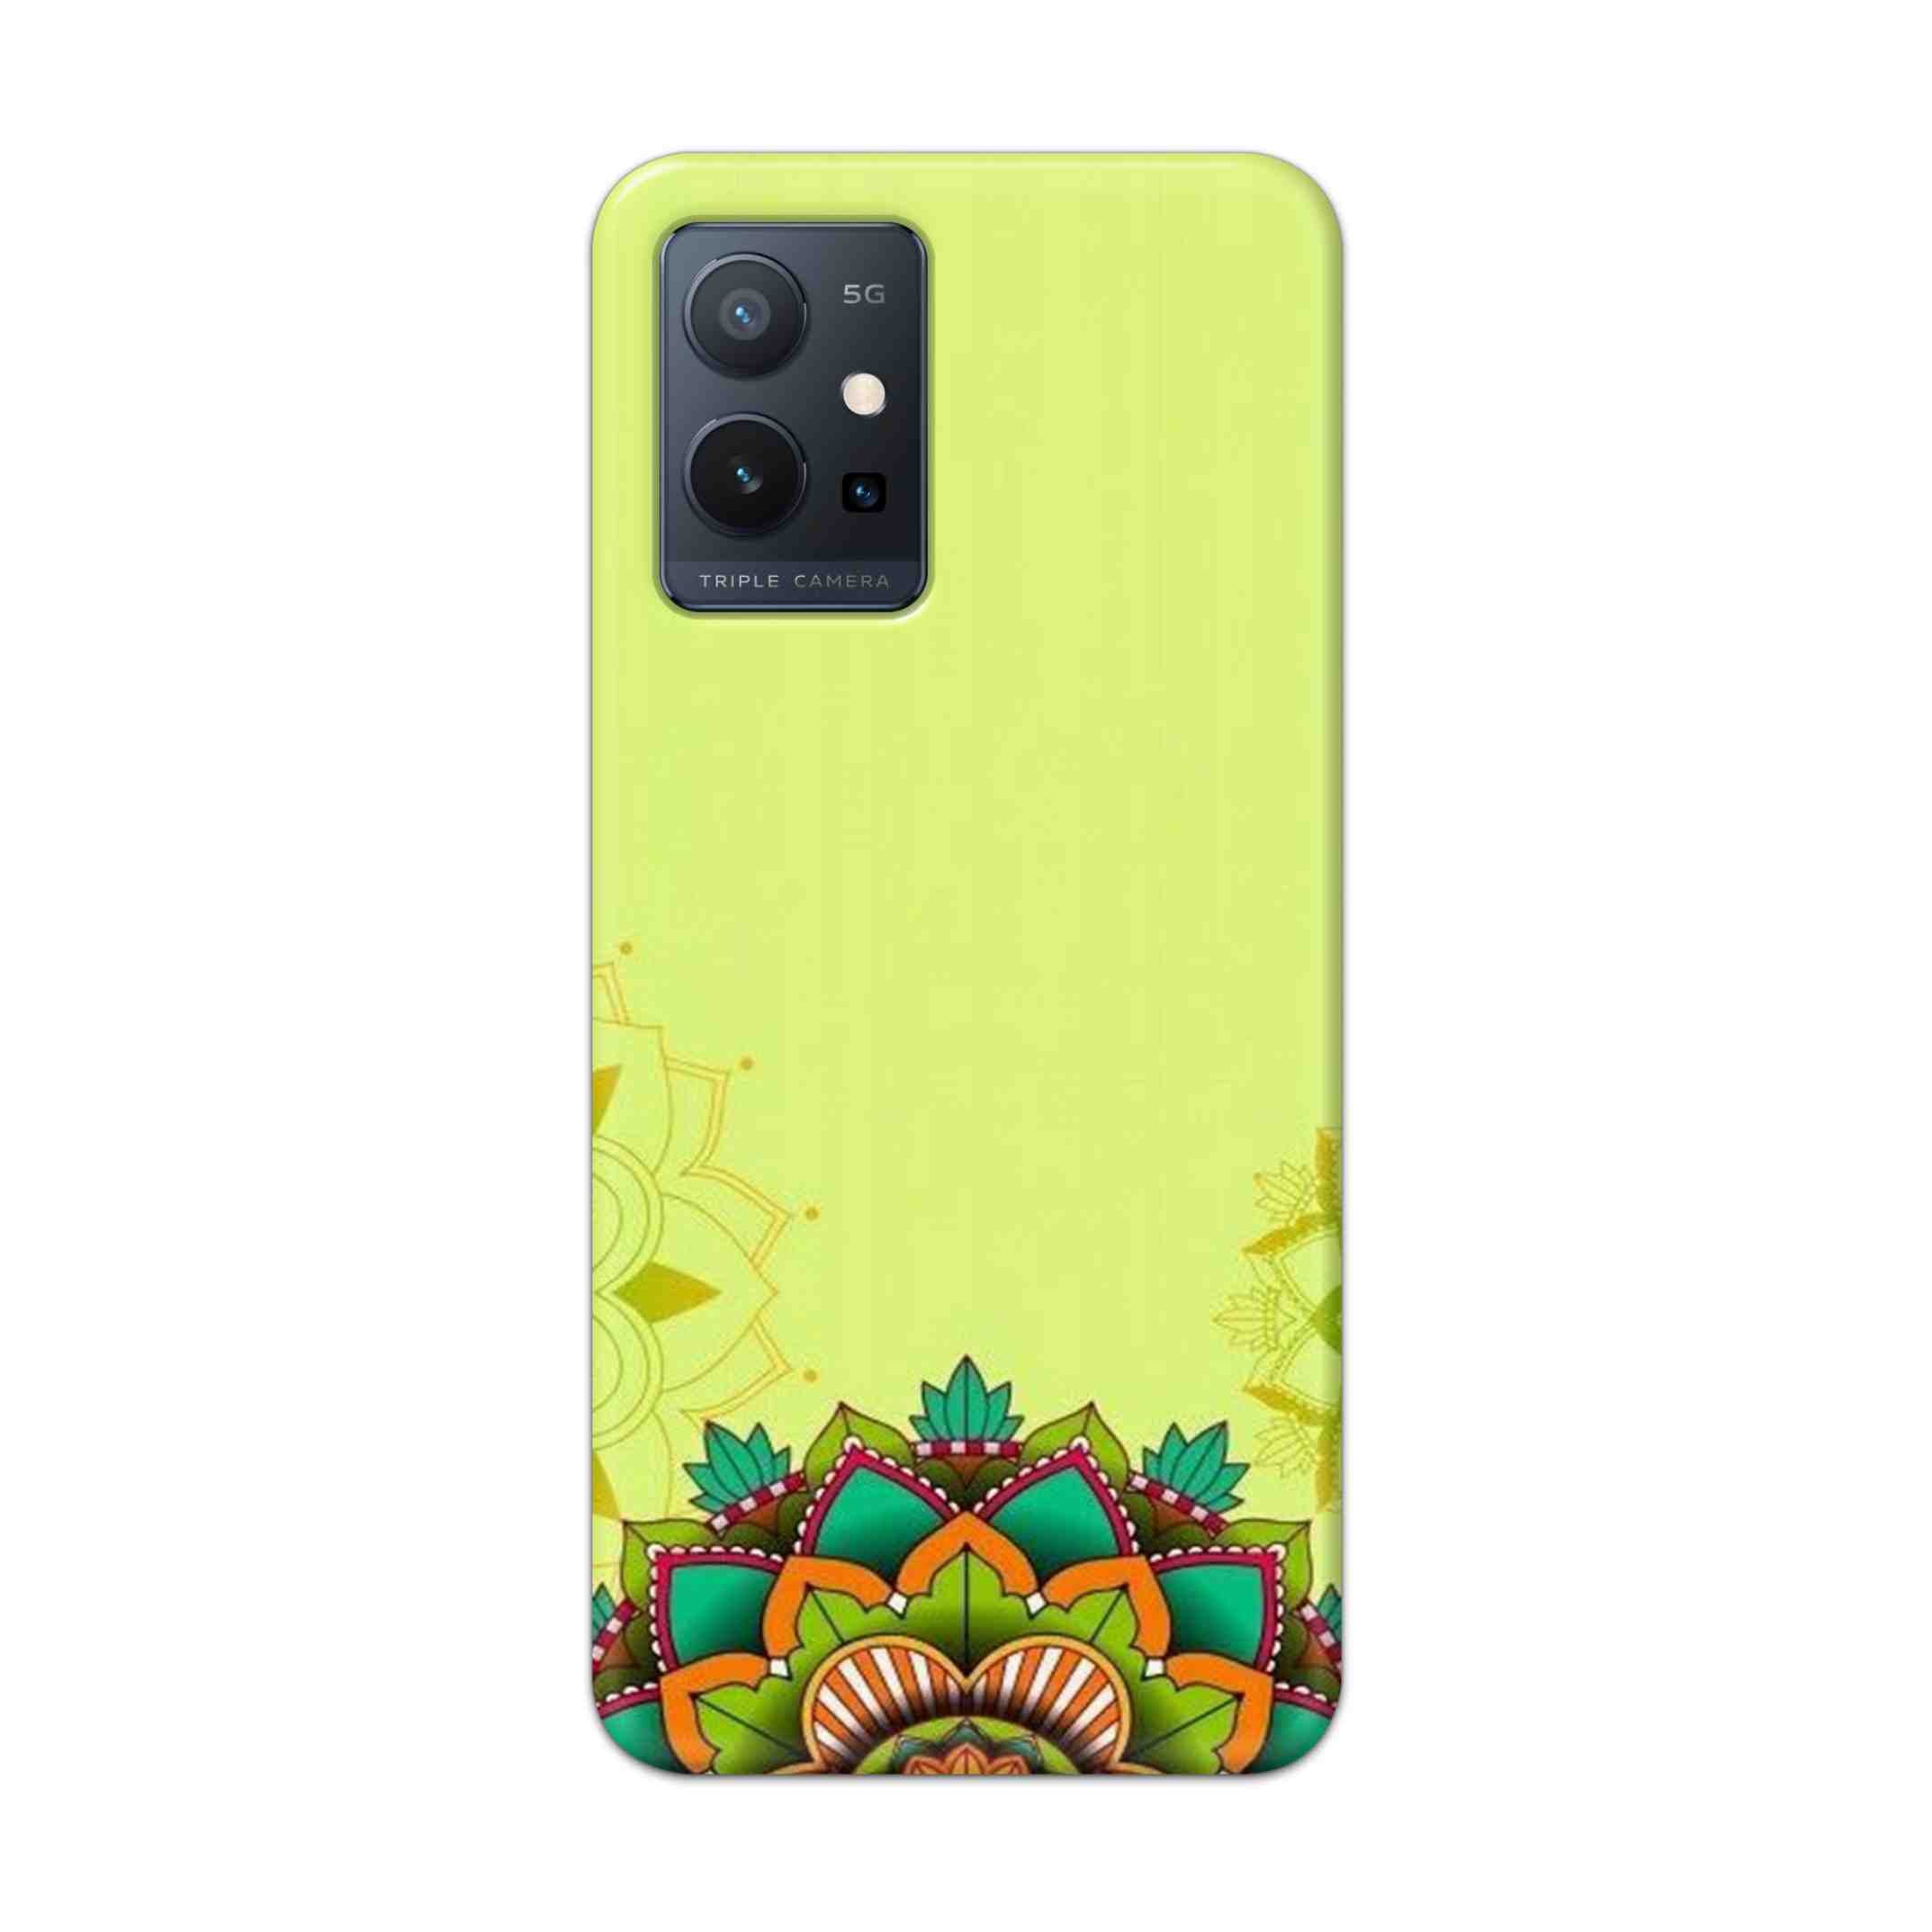 Buy Flower Mandala Hard Back Mobile Phone Case Cover For Vivo T1 5G Online